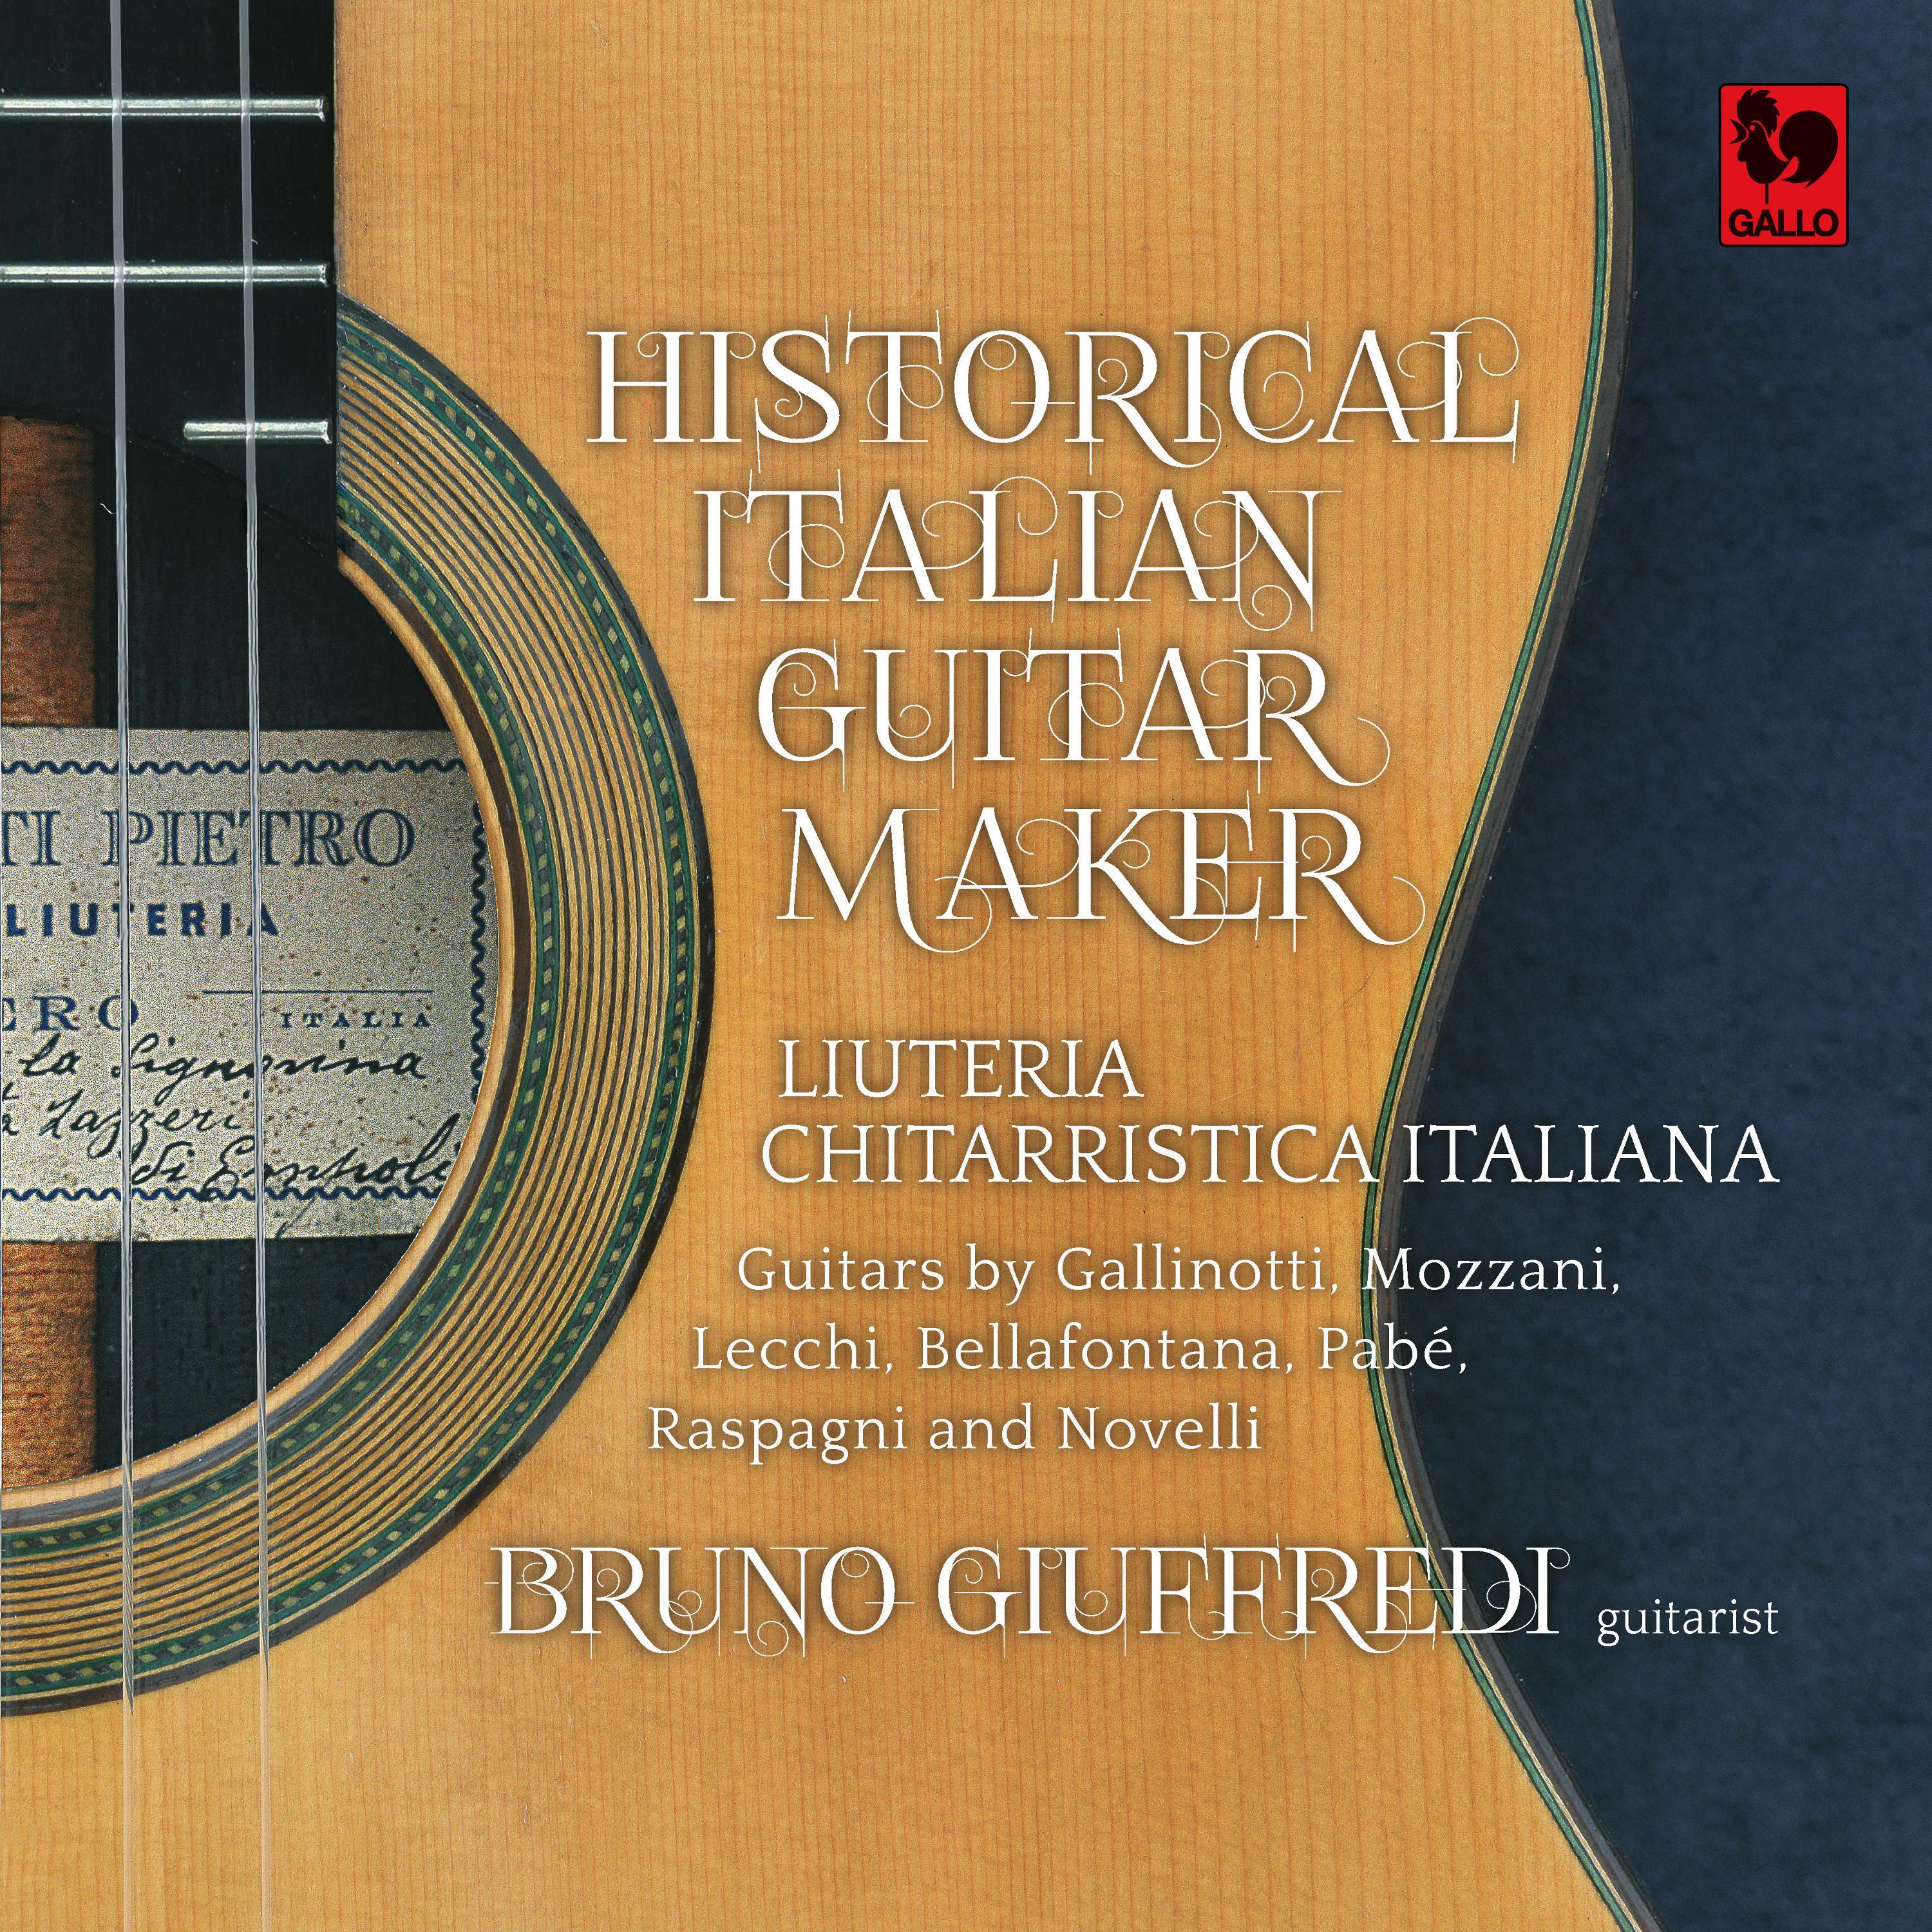 Tarantella (Guitar by Giuseppe Bernardo Lecchi of 1936